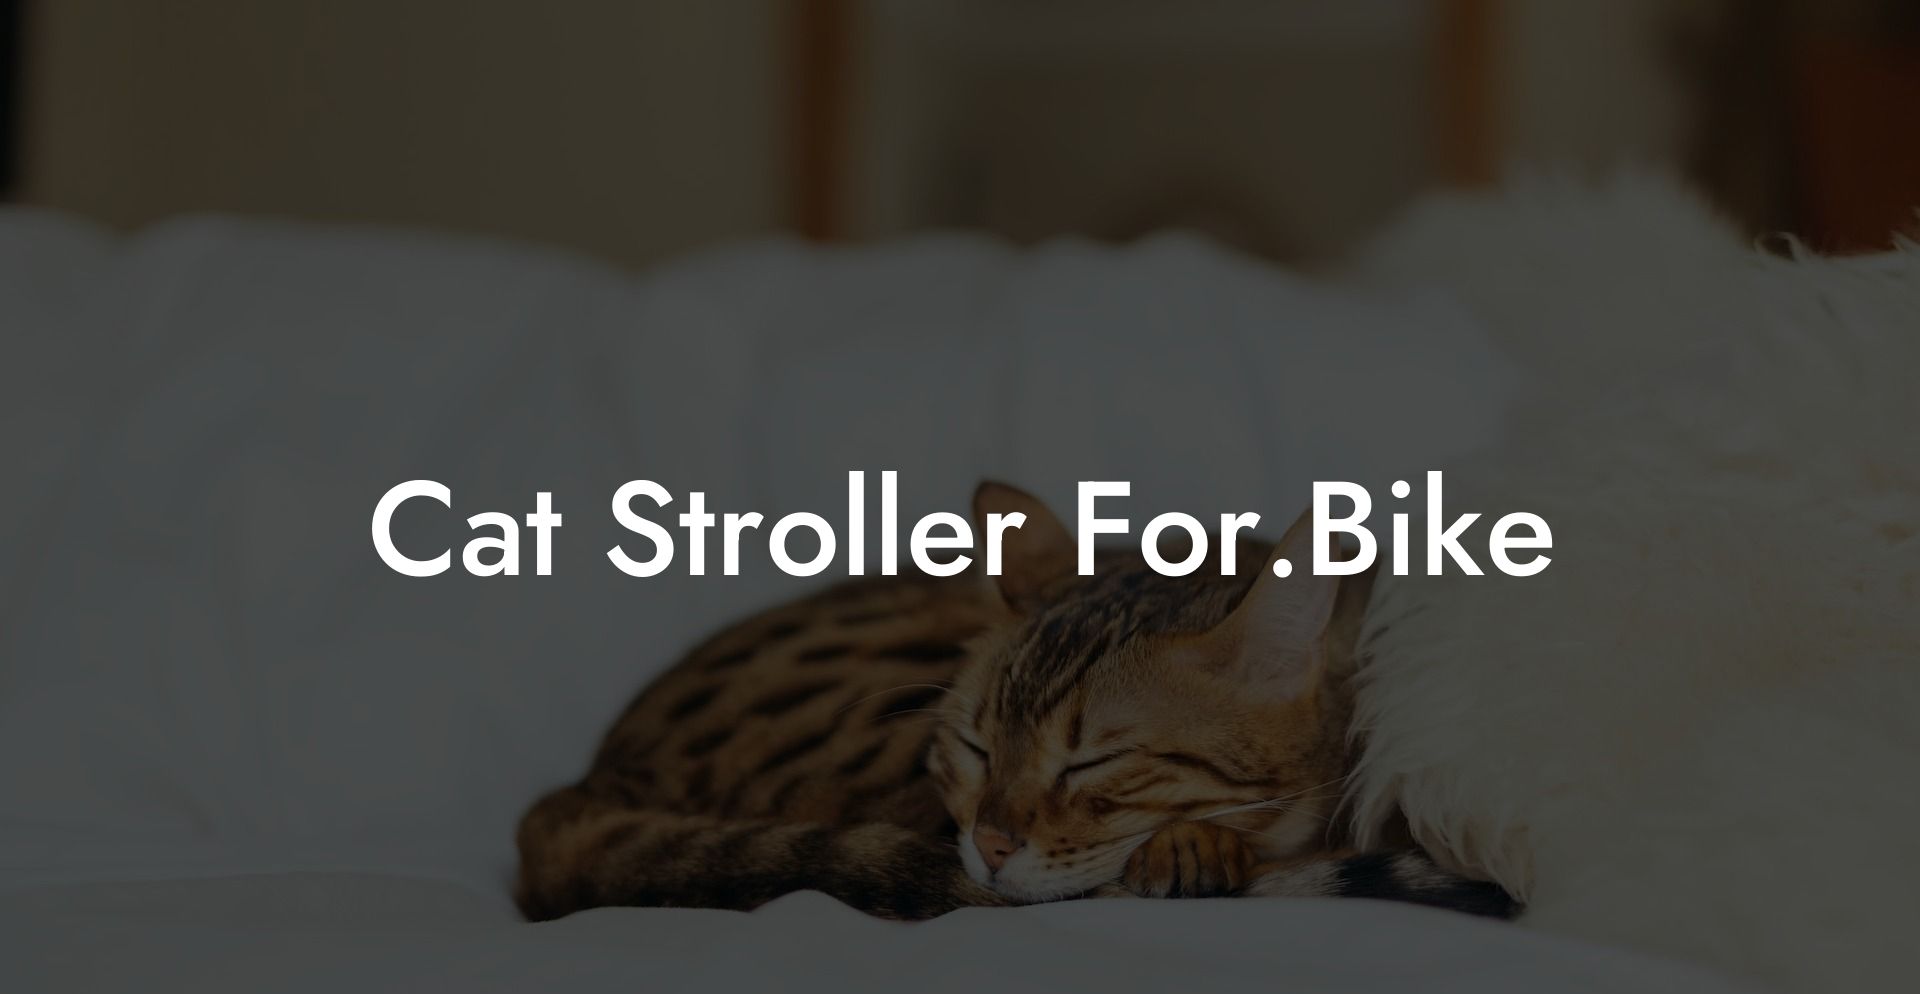 Cat Stroller For.Bike